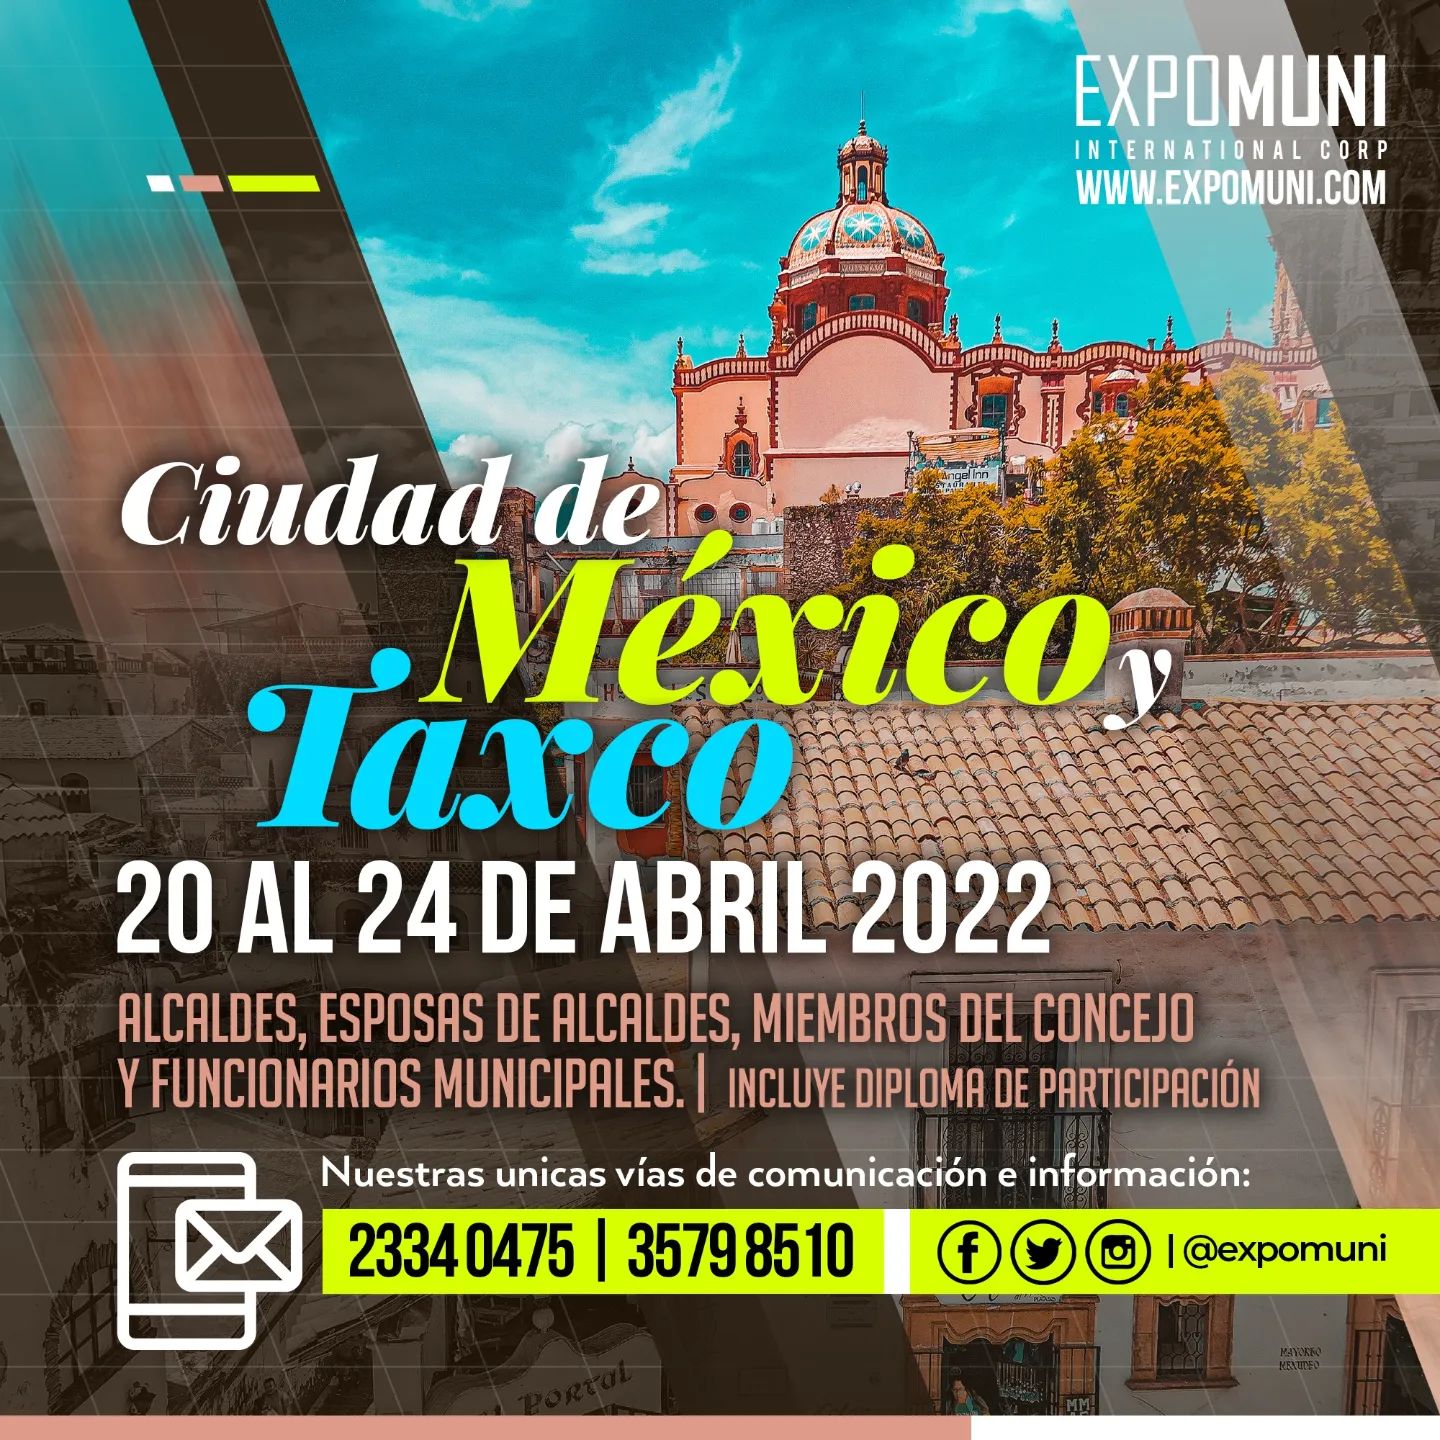 México 🇲🇽 | 20 al 24 de Abril 2022 | Alcaldes, Esposas de Alcaldes, Miembros del 
Concejo y Funcionarios Municipales. | + información 📞 23340475, info@expomuni.com